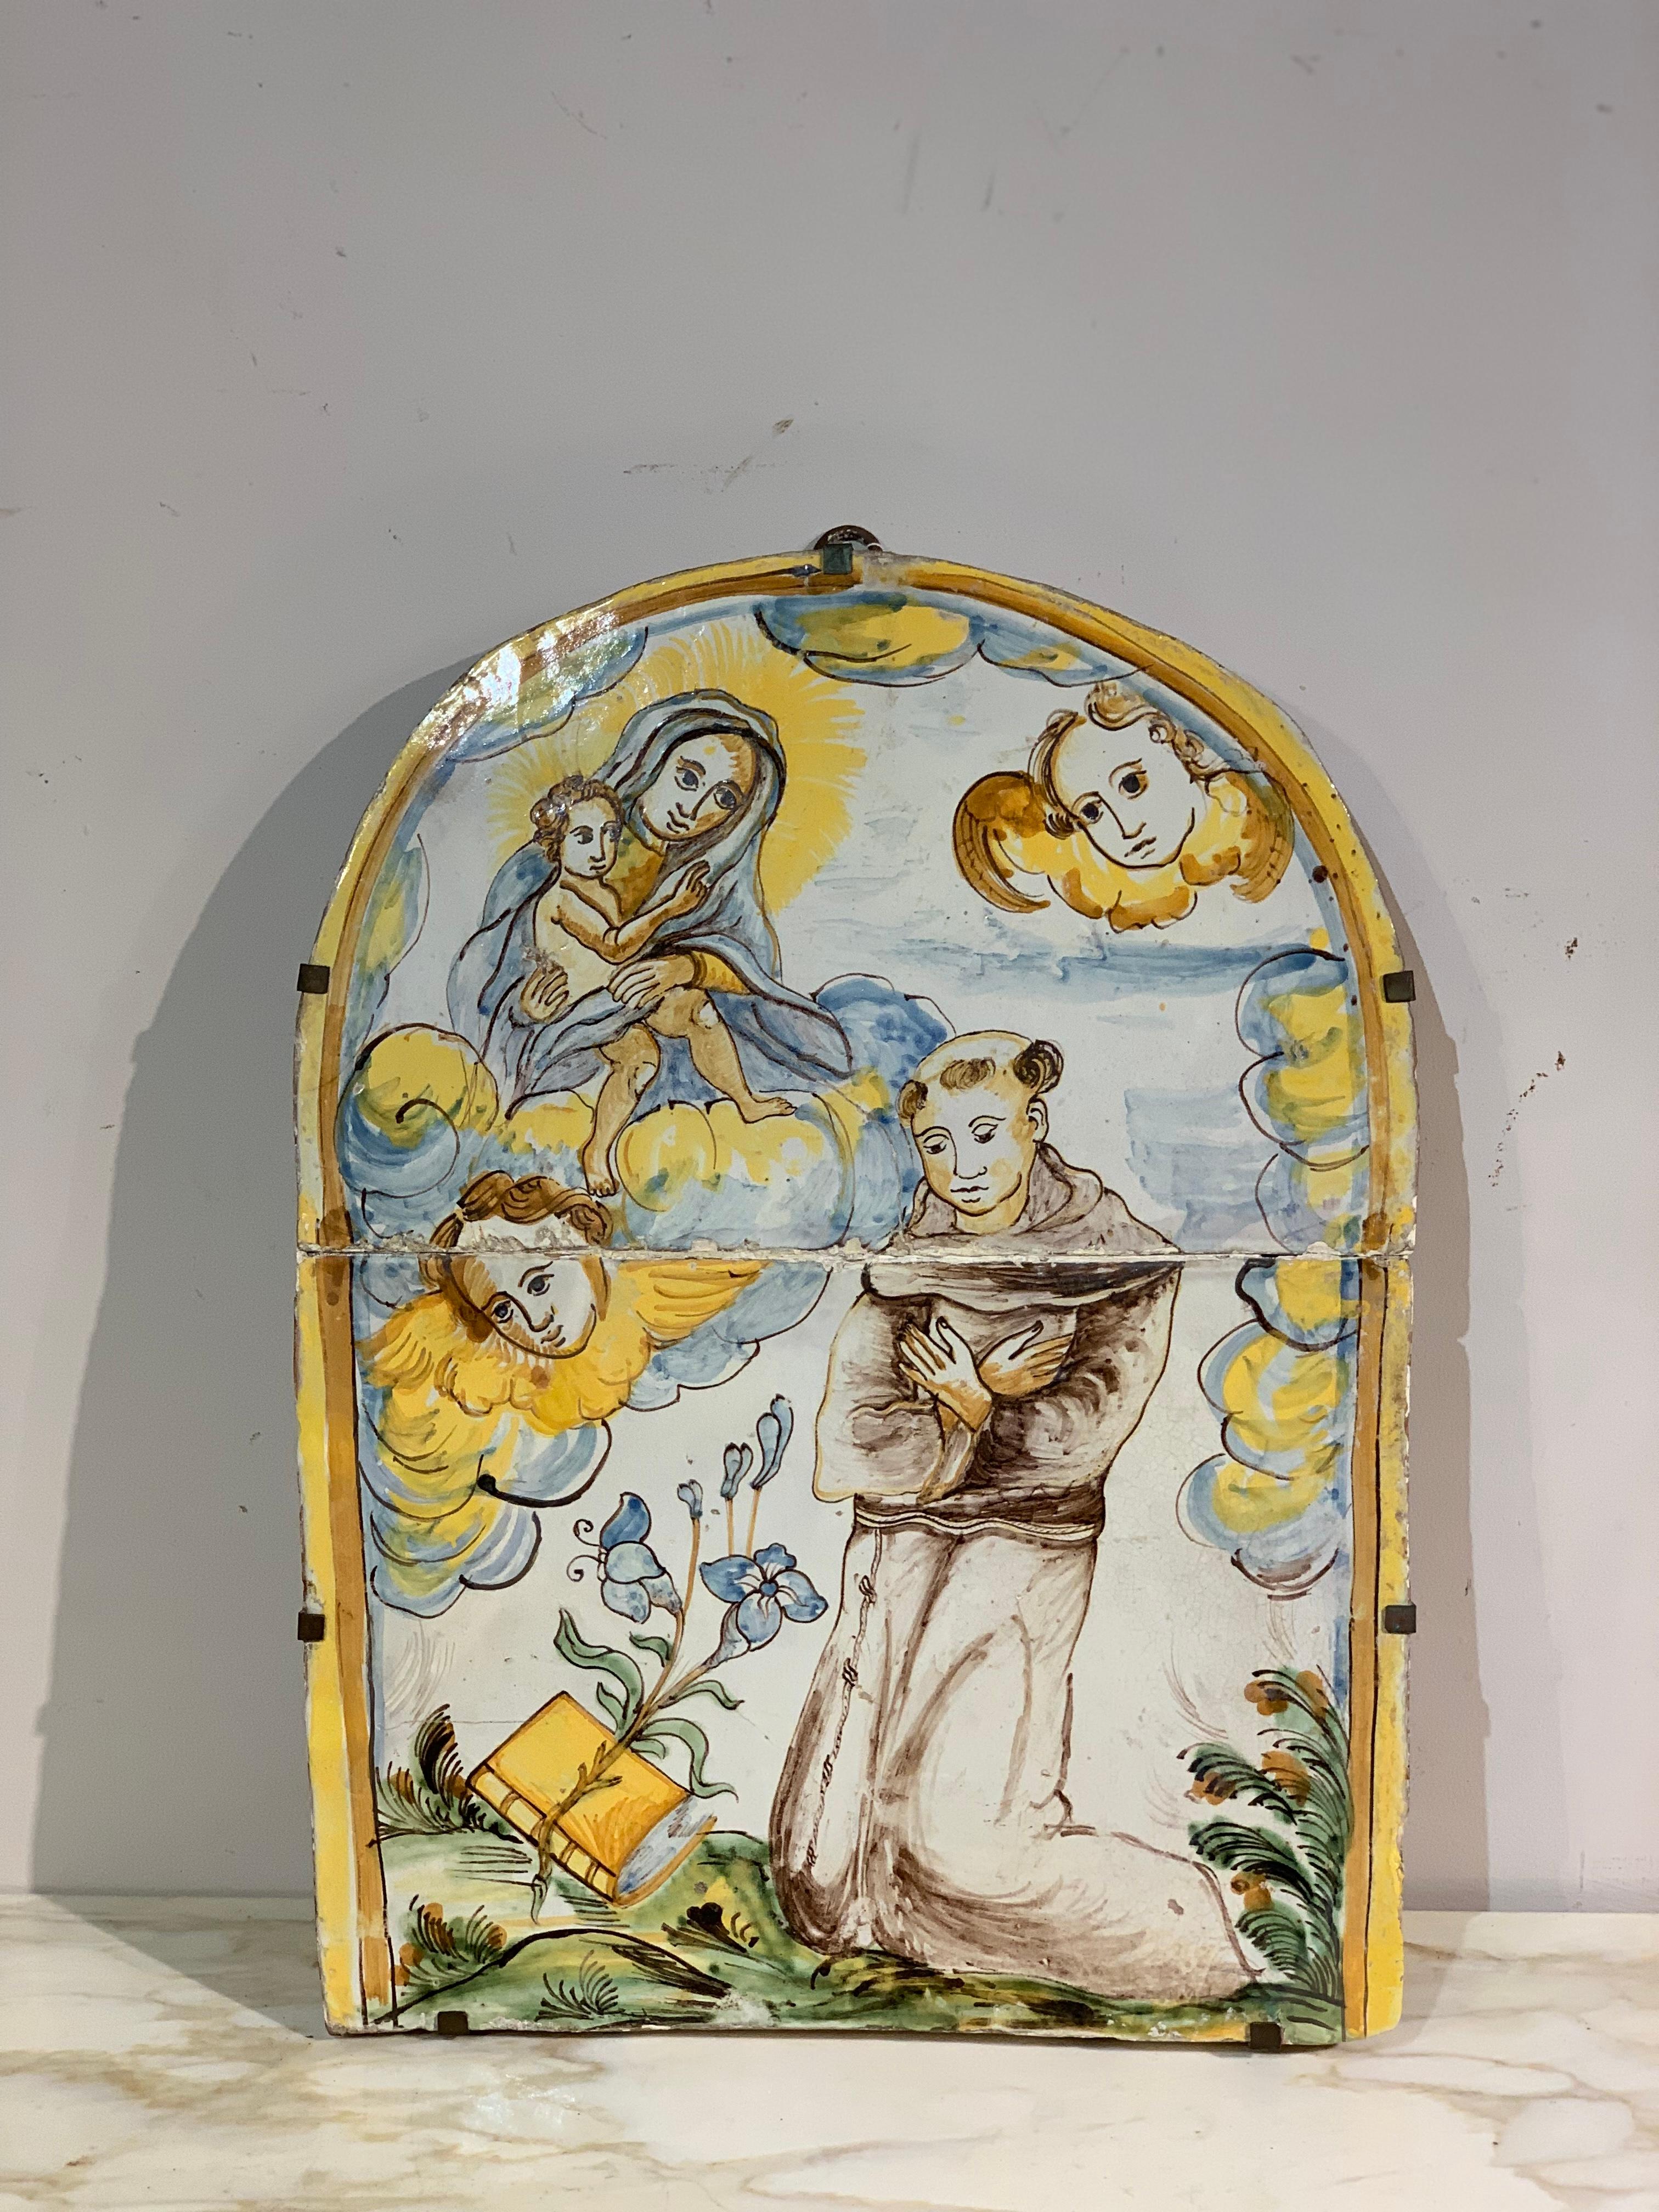 Schöne Tabernakelplatte aus polychromer Majolika, die die Madonna mit Kind und den Heiligen Antonius von Padua darstellt. Das Design und die Farben erinnern an die erste polychrome Majolika aus den berühmten Brennöfen von Montelupo Fiorentino. Die